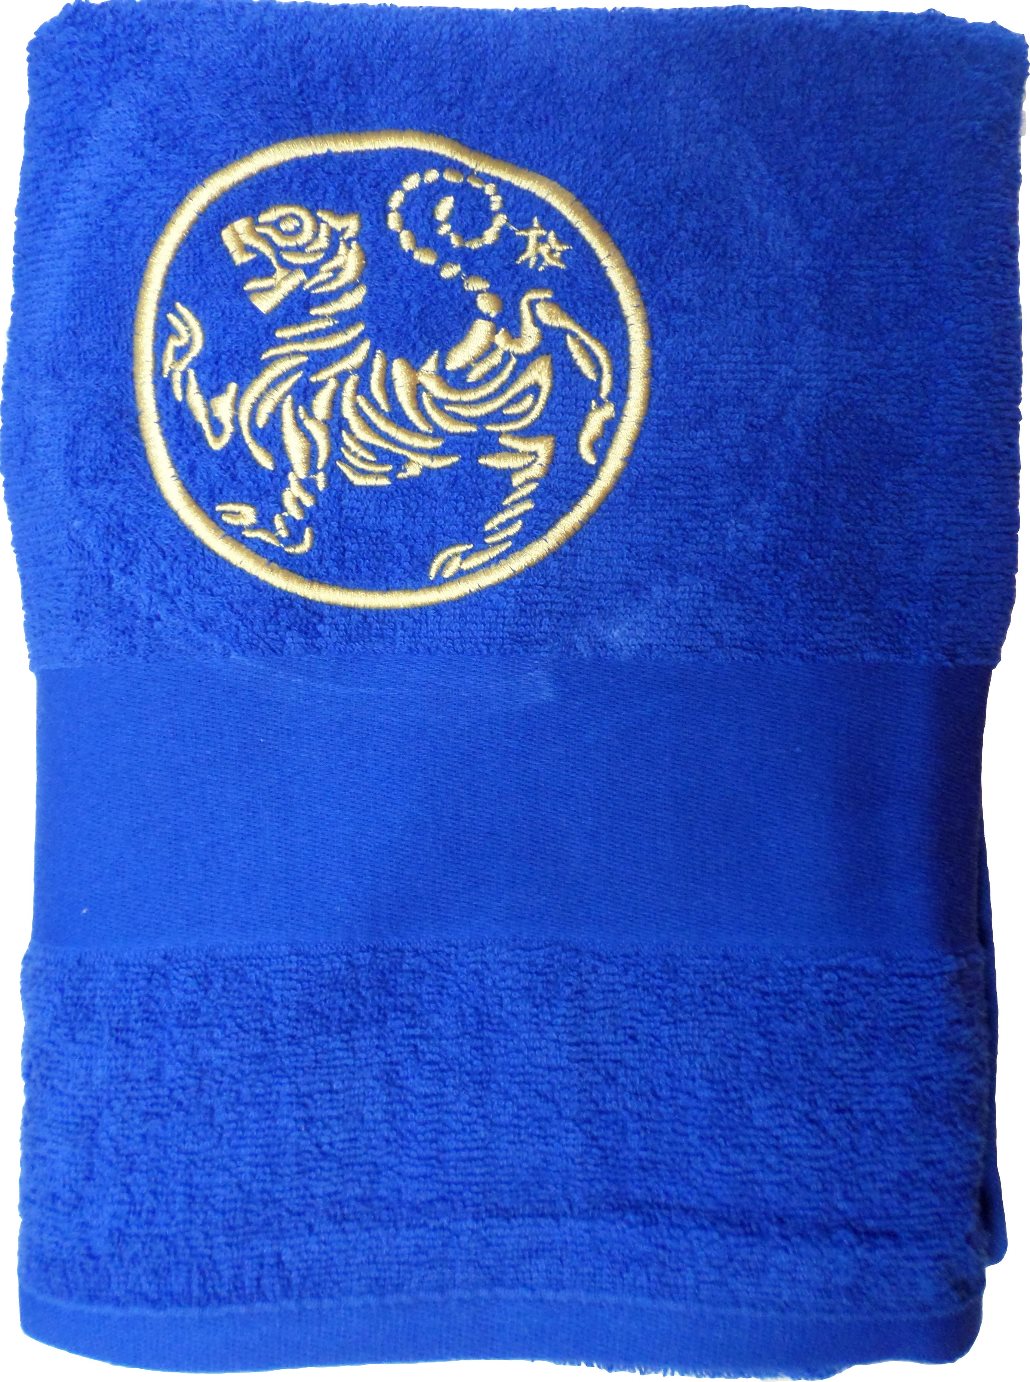 Duschtuch blau 140 x 70 / bestickt "Shotokan Tiger" gold